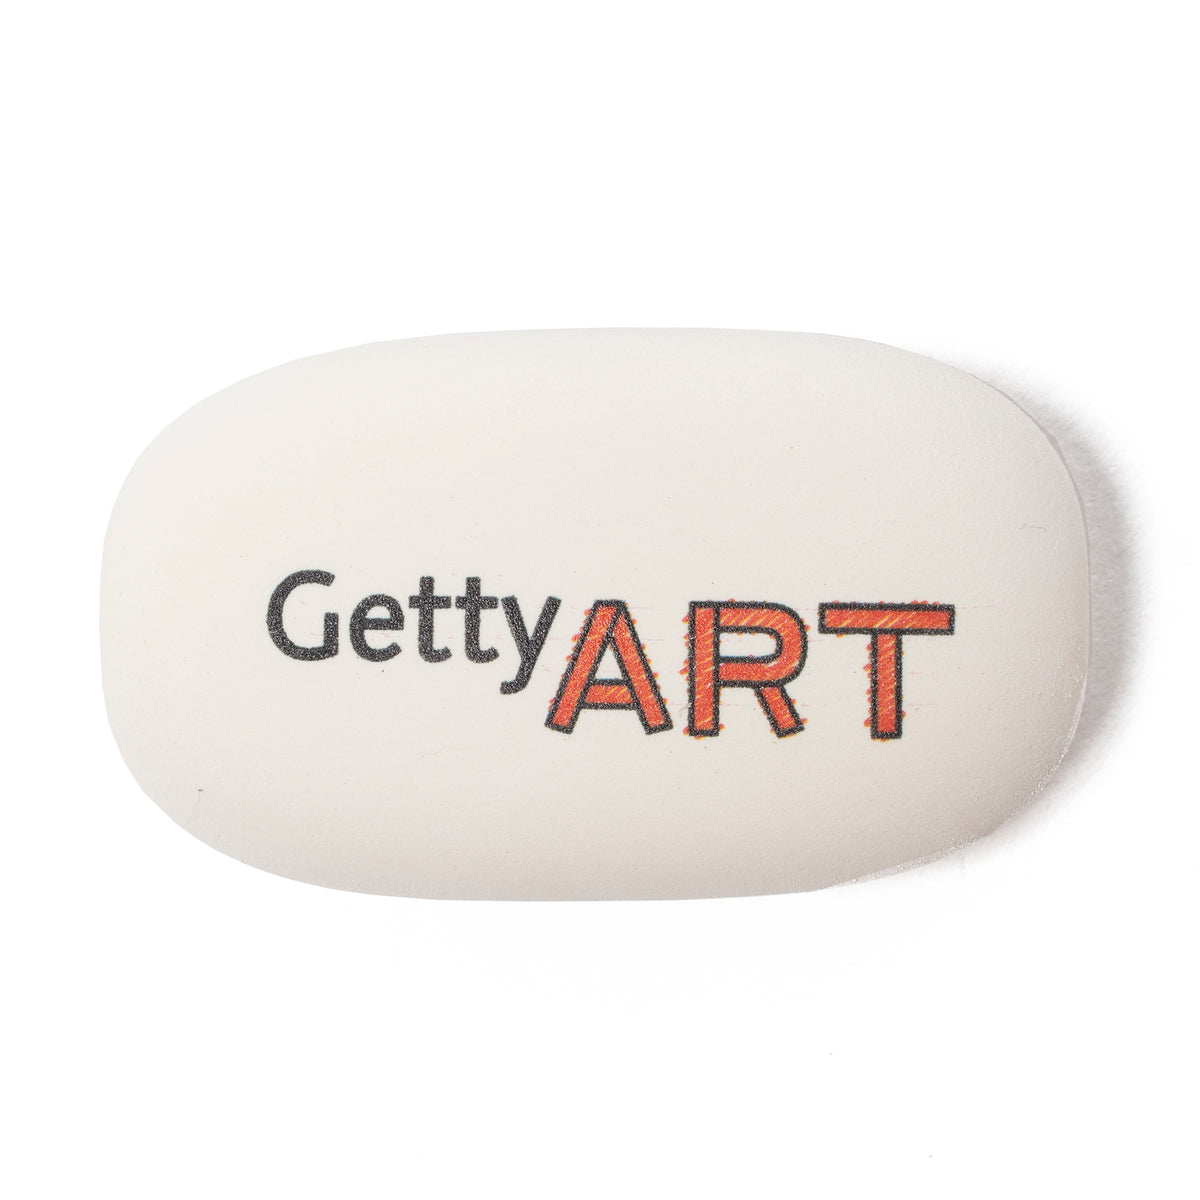 Getty Art Oval Eraser